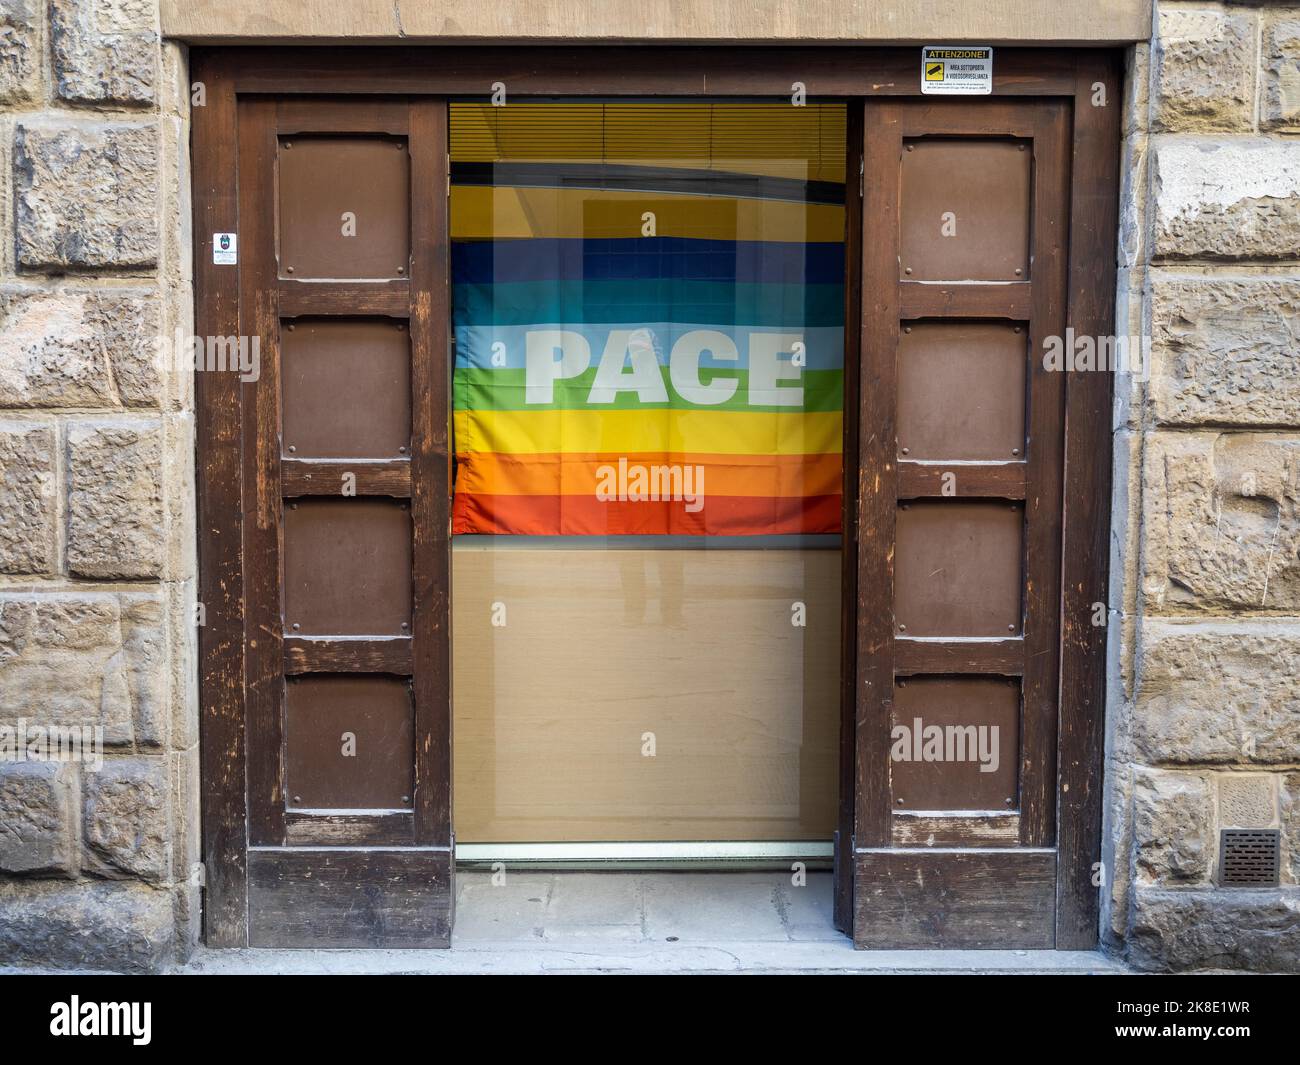 Appel à la paix, drapeau aux couleurs arc-en-ciel avec inscription Pace, Florence, Toscane, Italie Banque D'Images